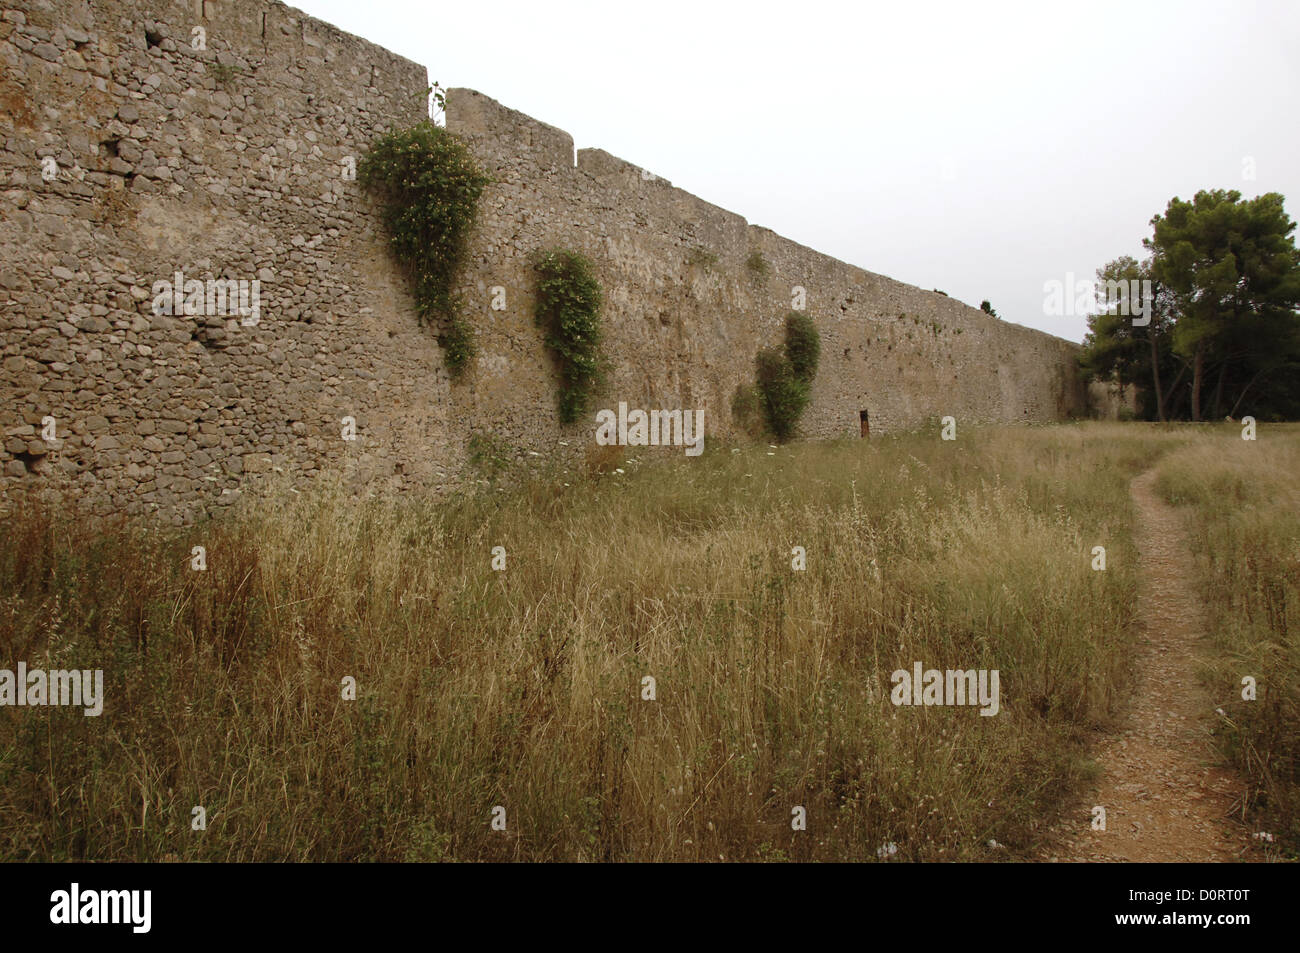 La Grèce. Pylos. Forteresse de Niokastro. A commencé à être construit à partir des Ottomans en 1573. Mur. Banque D'Images